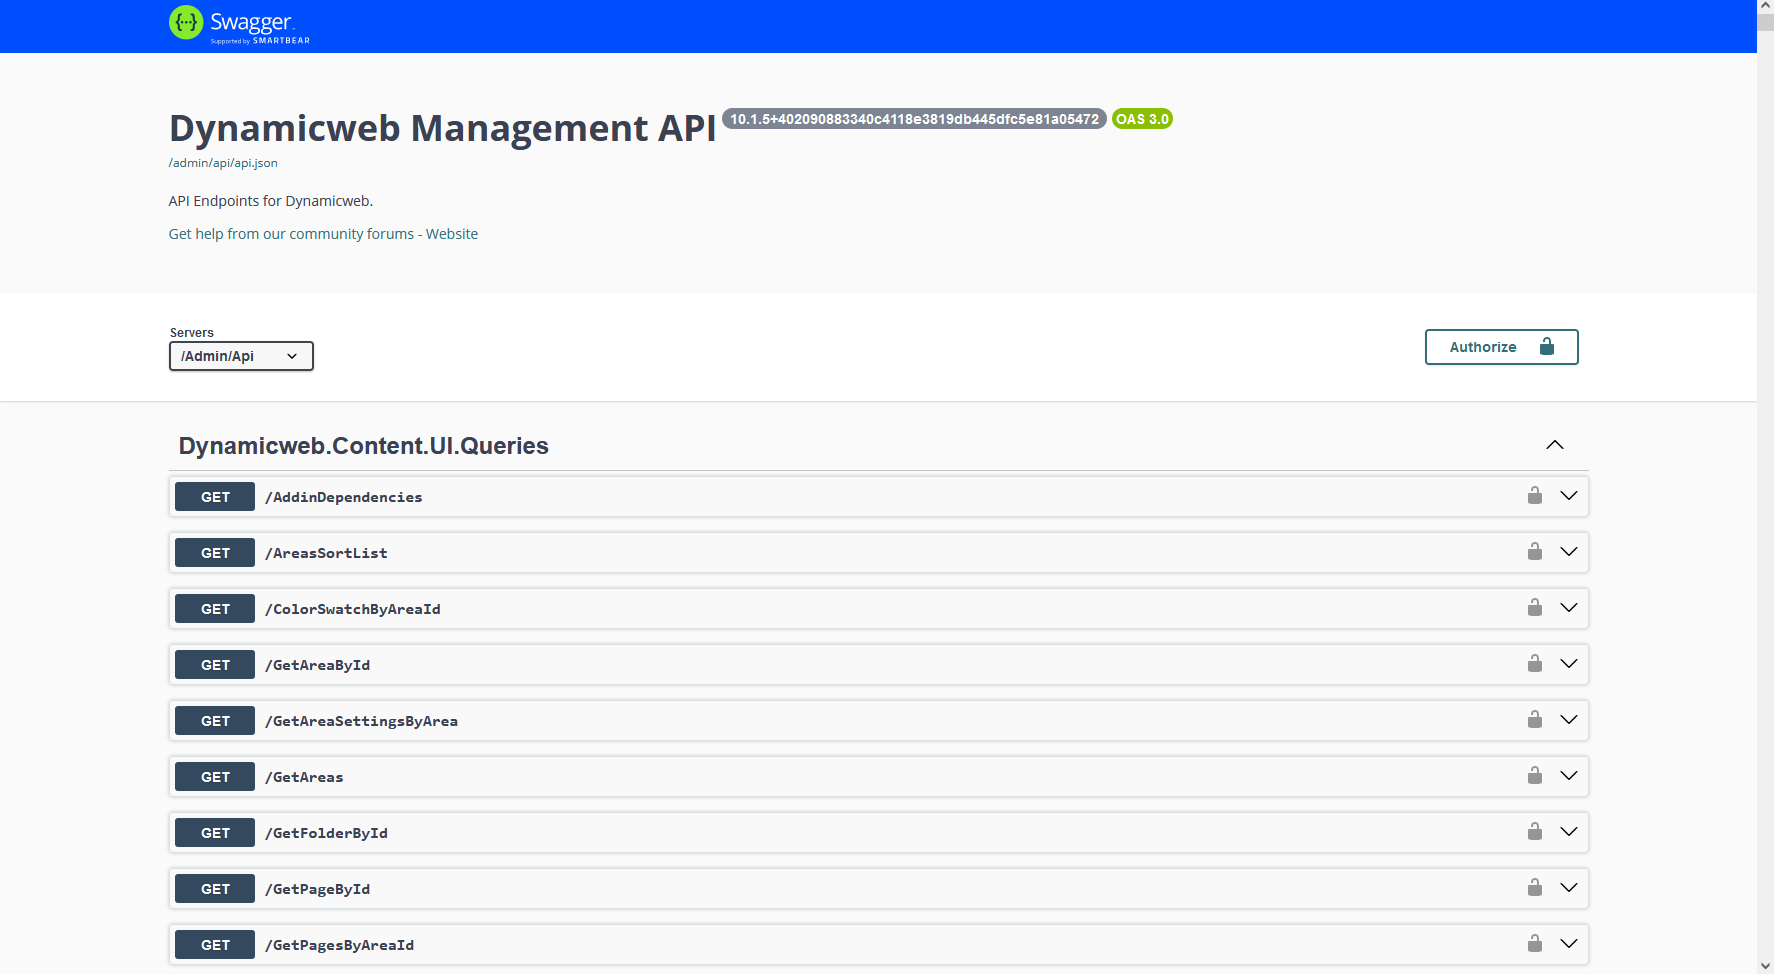 Management API